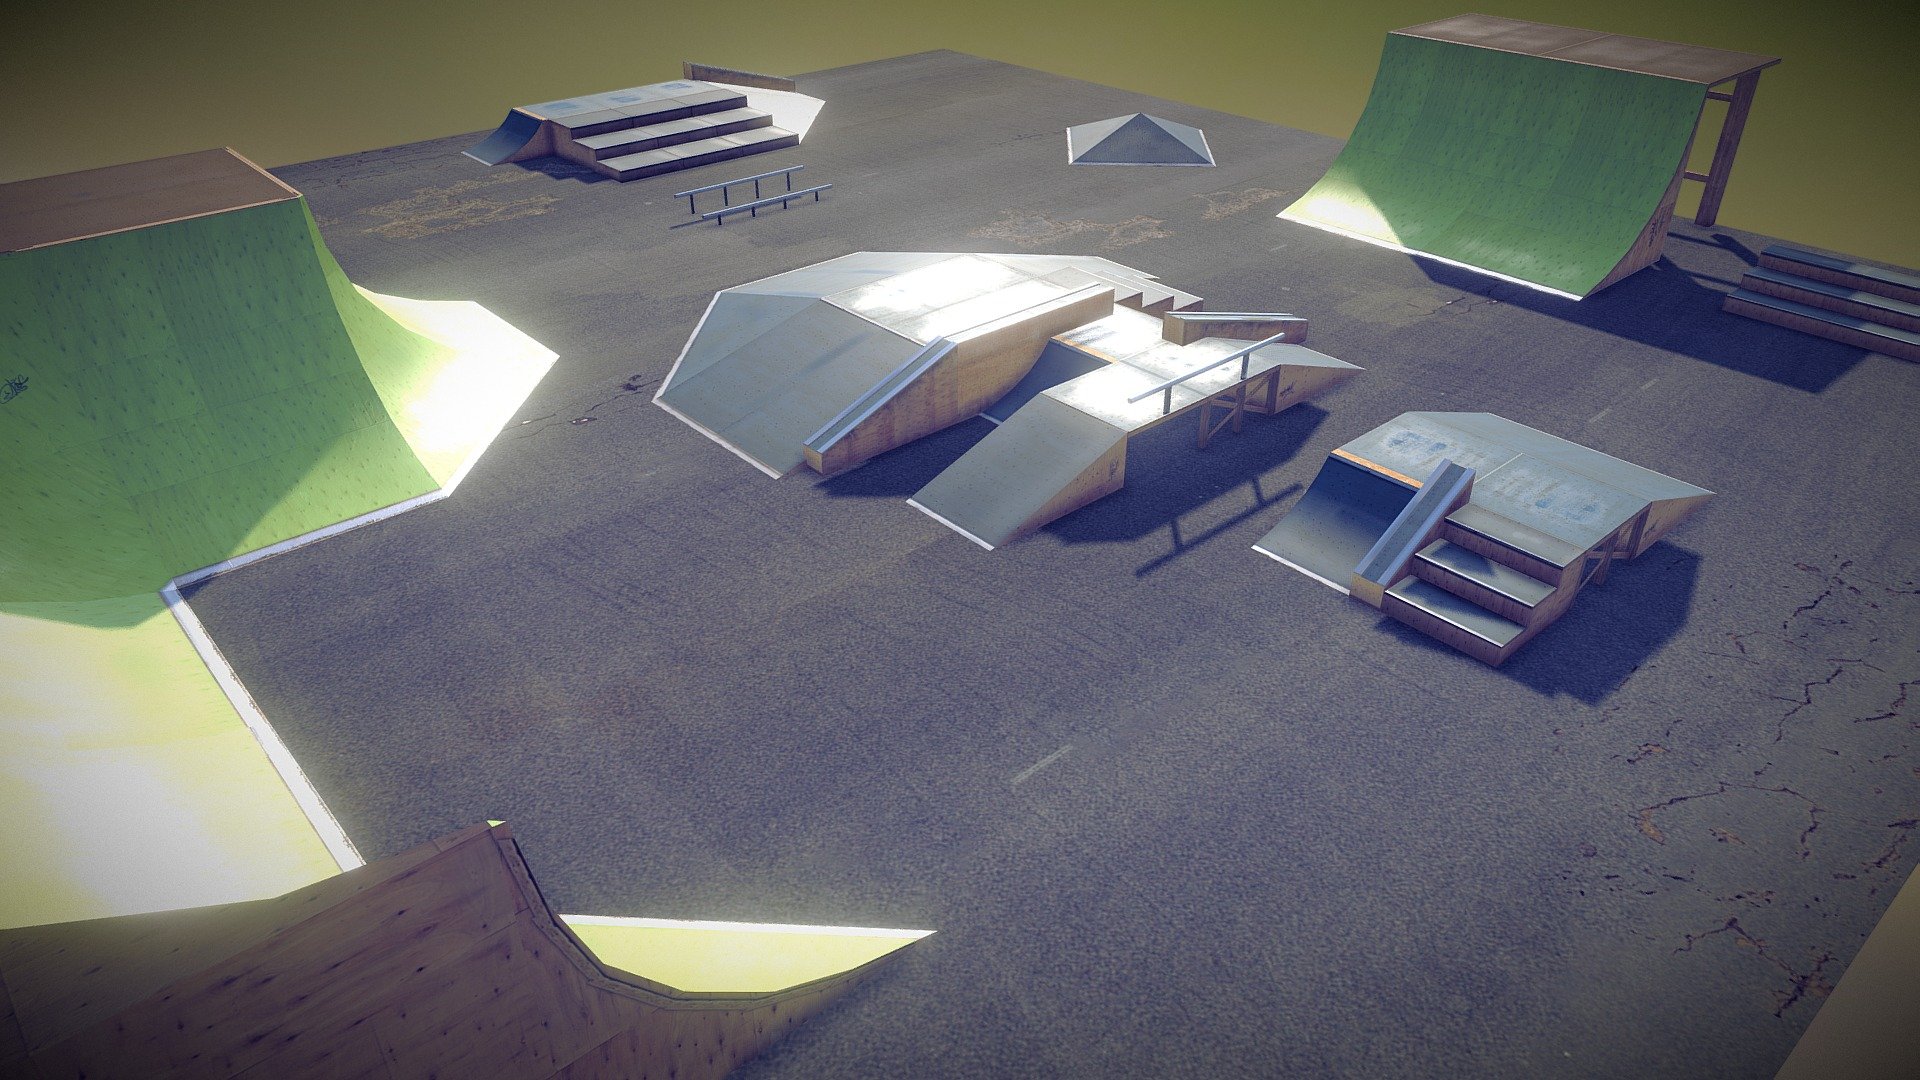 Modular skatepark constructions, available on Unity  Assetstore - Modular Skatepark - 3D model by edgarssoiko 3d model